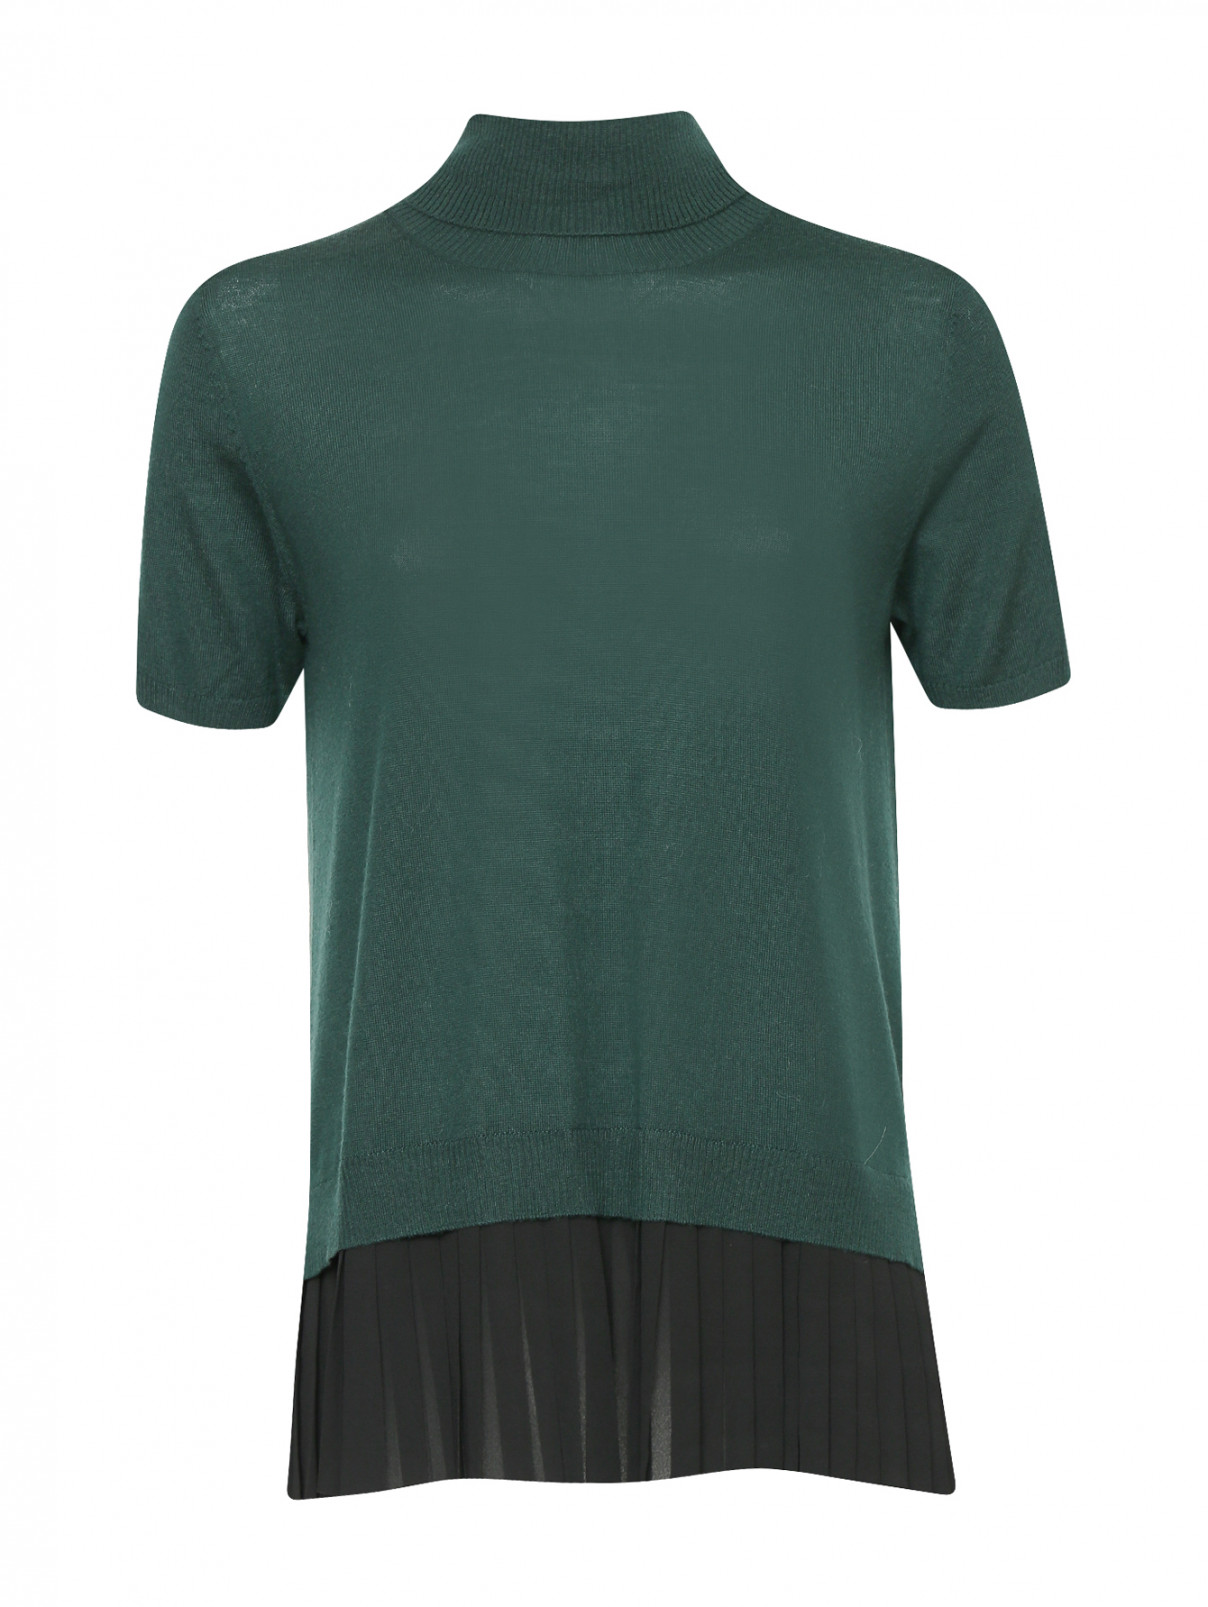 Джемпер из шерсти с короткими рукавами и декоративной отделкой P.A.R.O.S.H.  –  Общий вид  – Цвет:  Зеленый